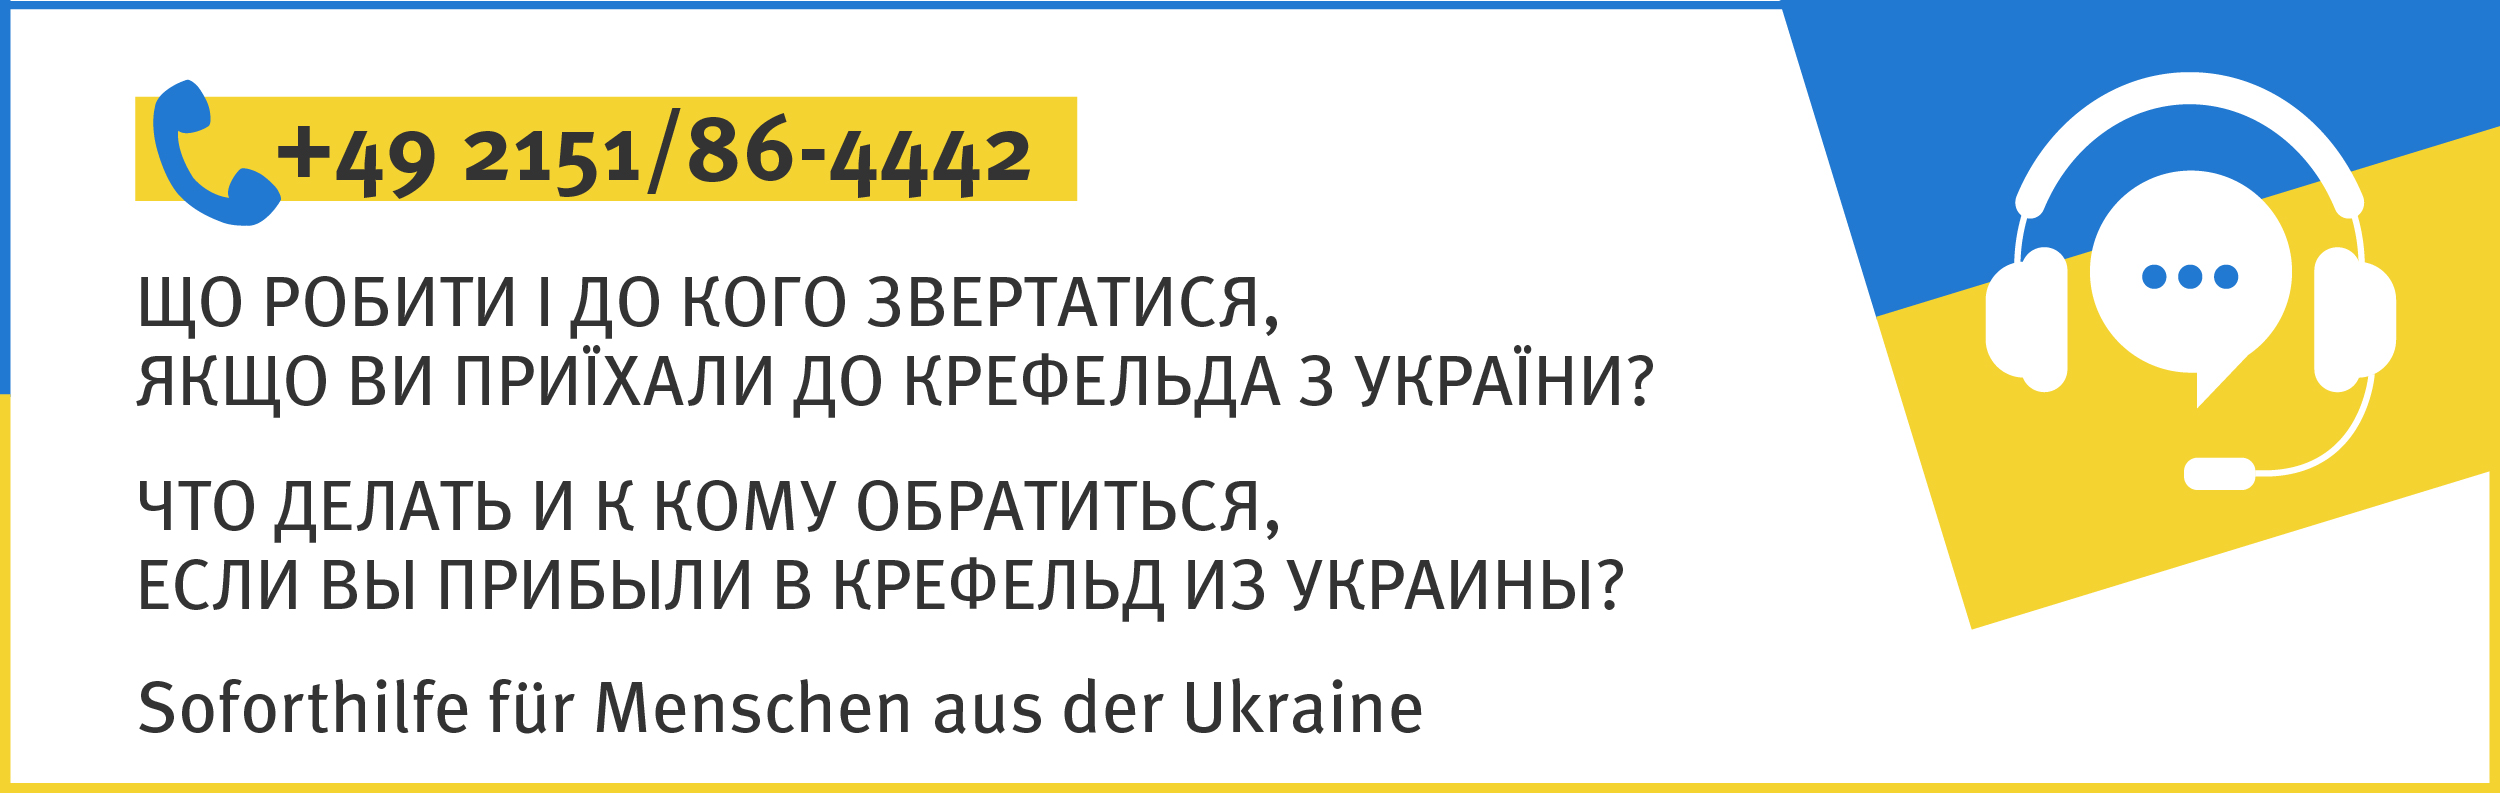 Hotline bei der Stadt Krefeld für Menschen aus der Ukraine. Grafik: Stadt Krefeld, Presse und Kommunikation